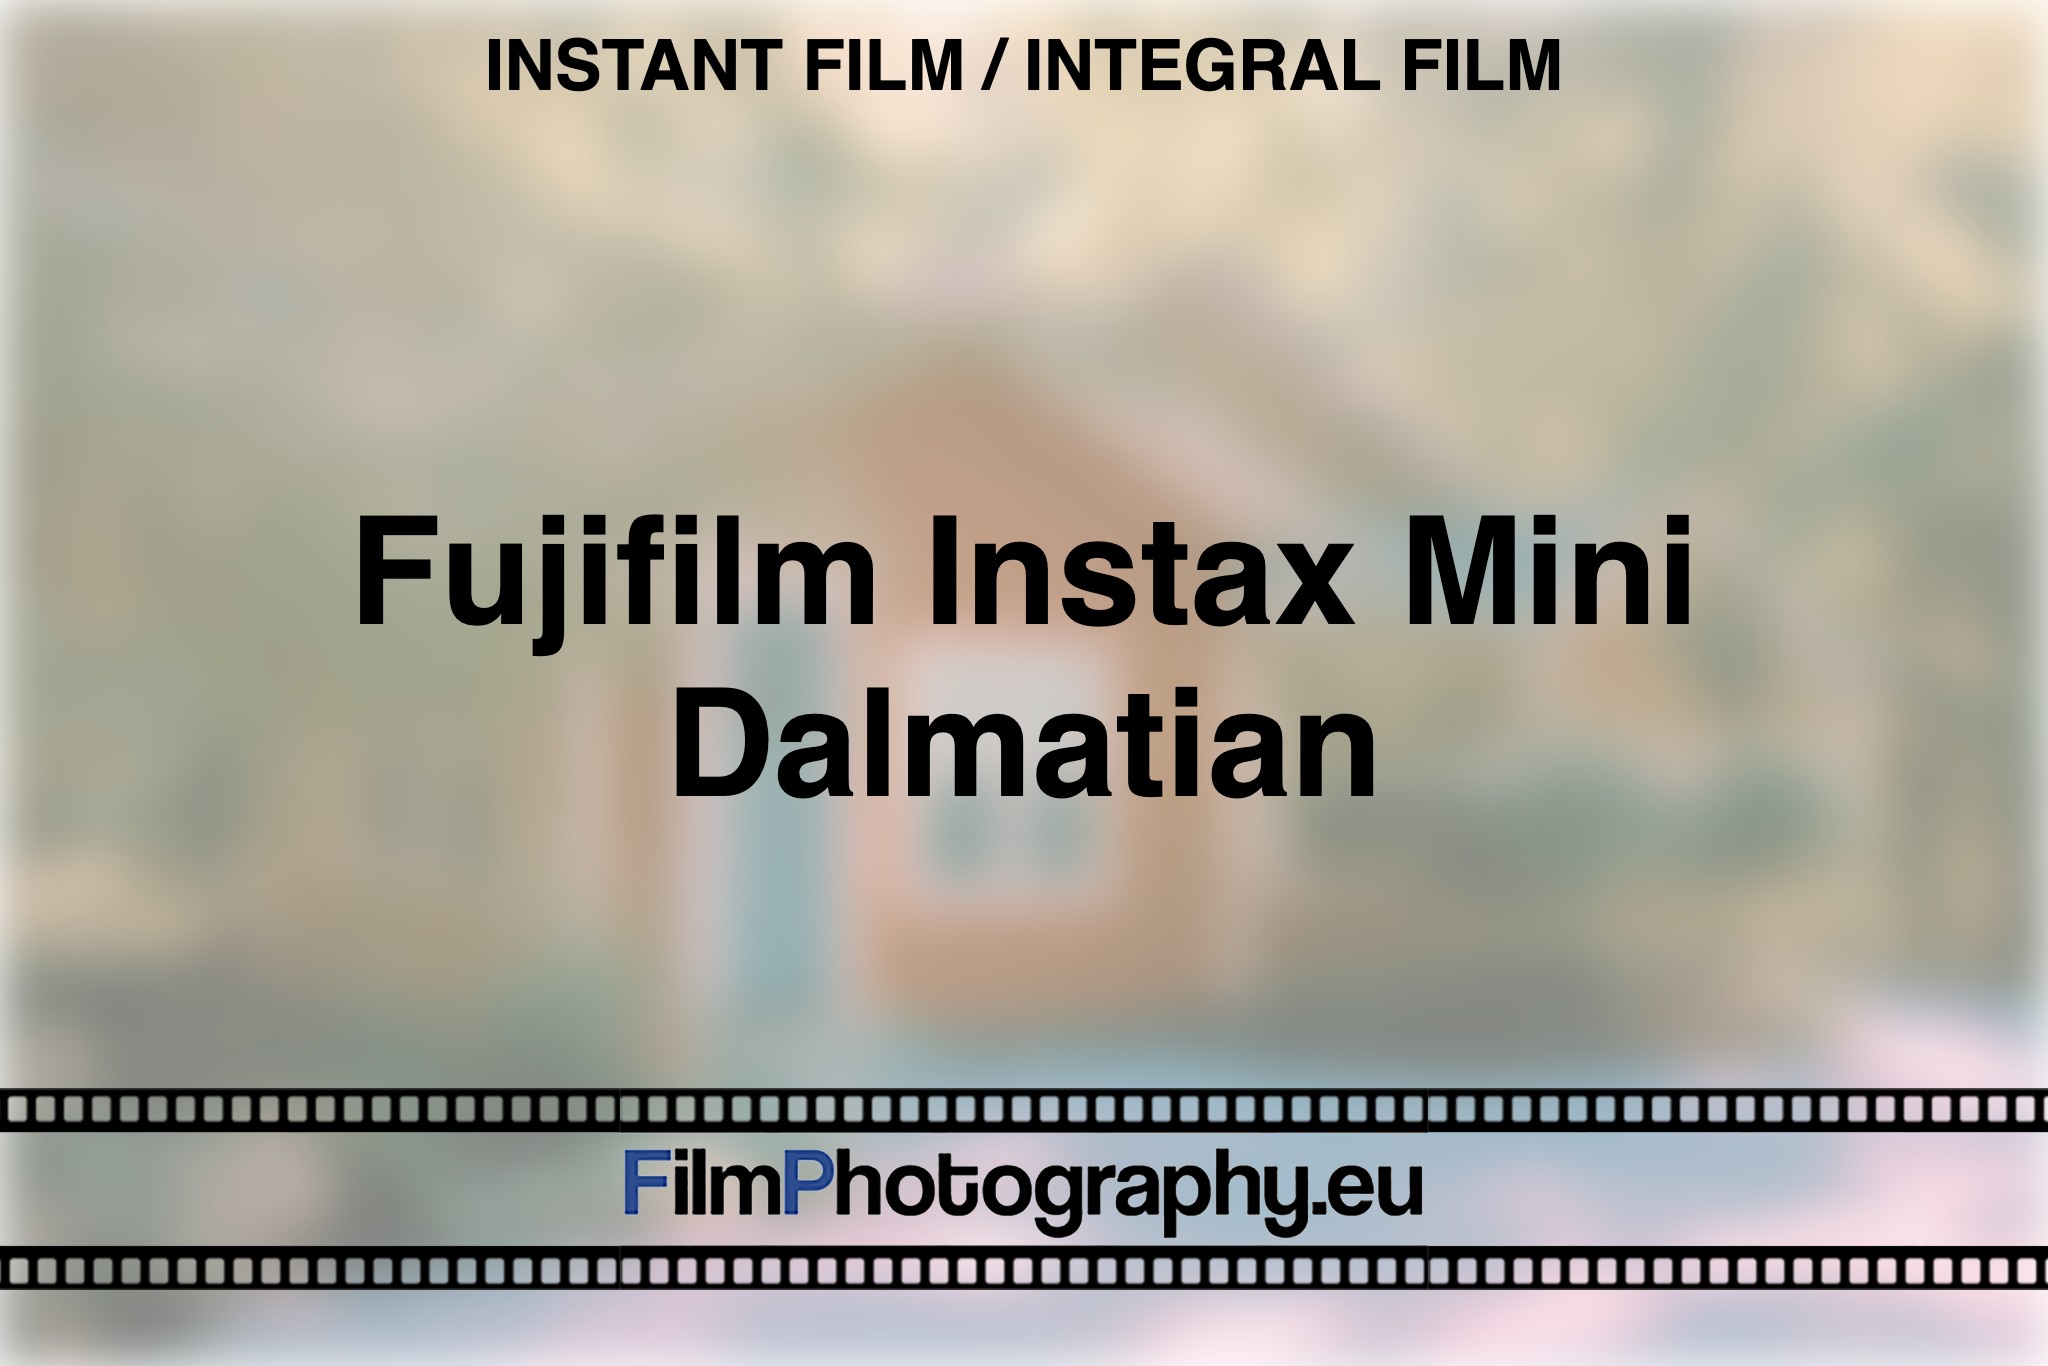 fujifilm-instax-mini-dalmatian-instant-film-integral-film-bnv